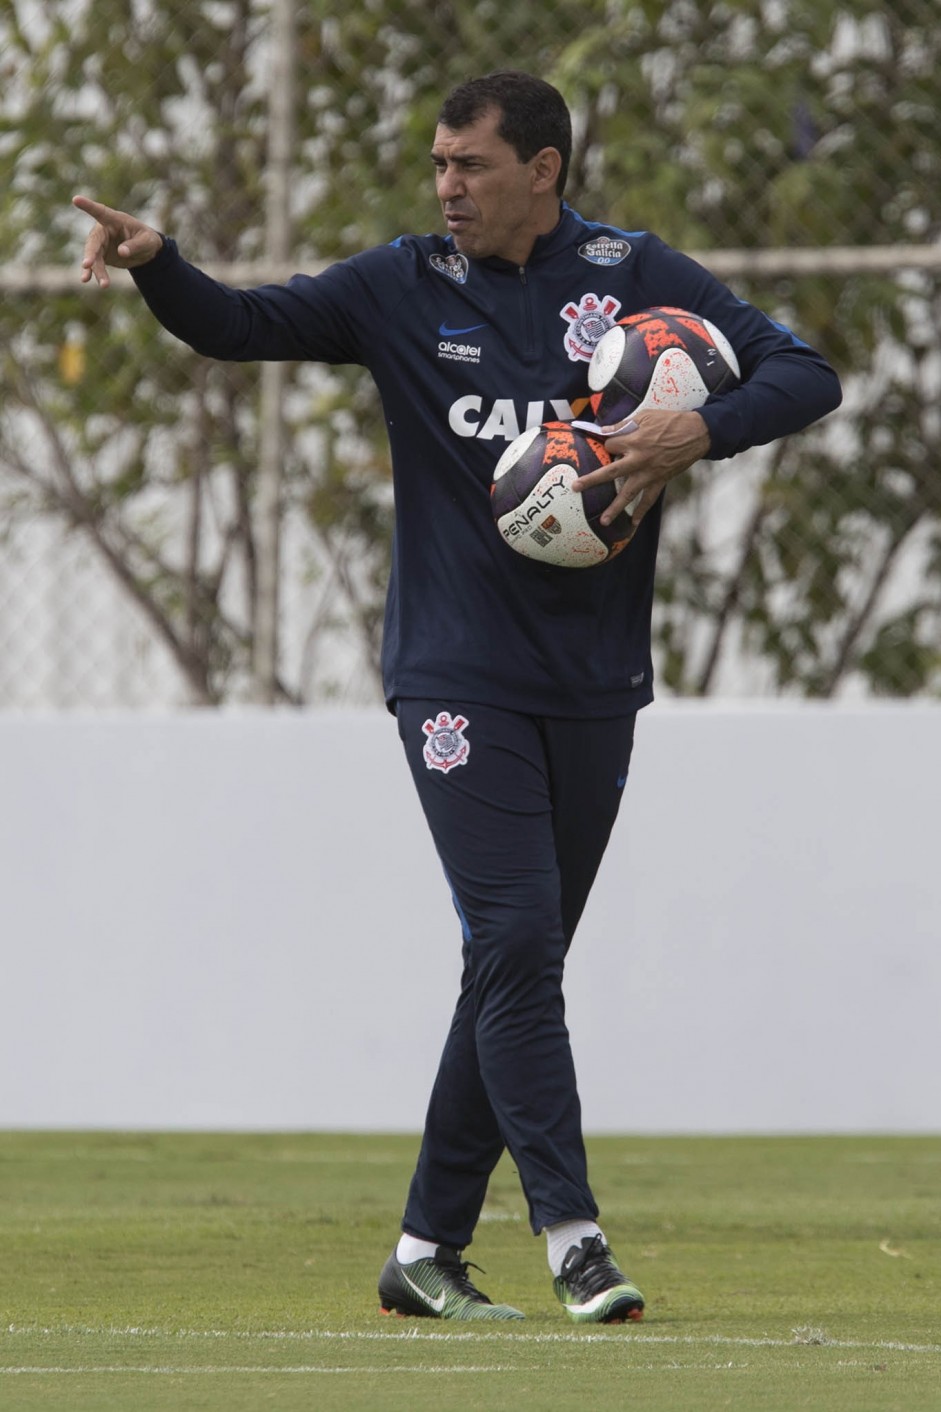 Fbio Carille no treino do Corinthians antes da partida contra o Botafogo-SP